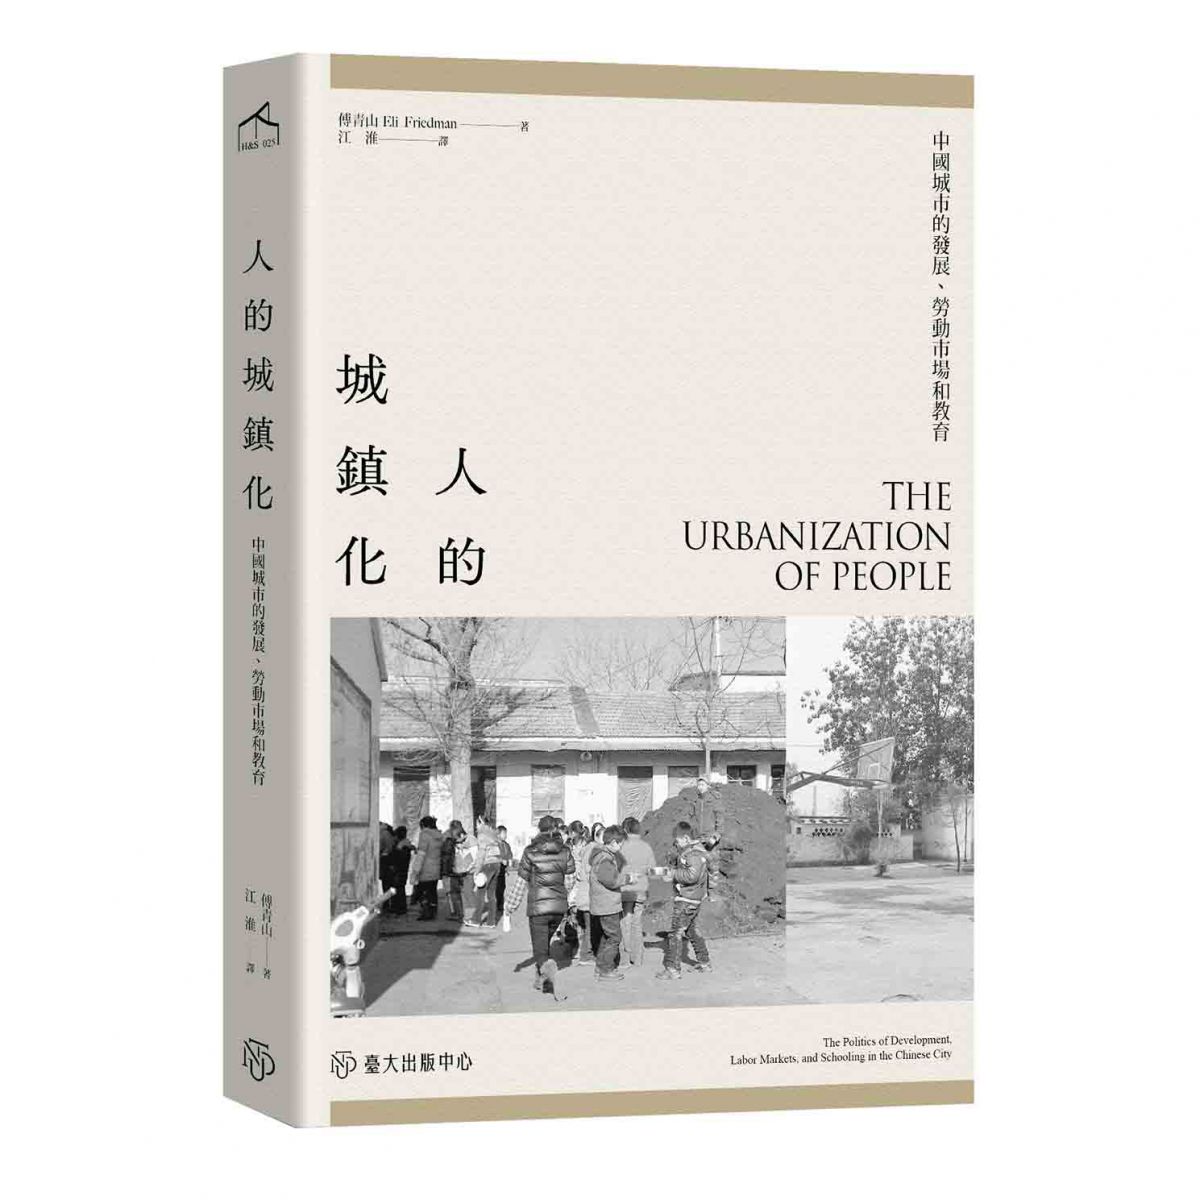 《人的城鎮化》探討中國城市發展、勞動市場，以及人民如何被城鎮化